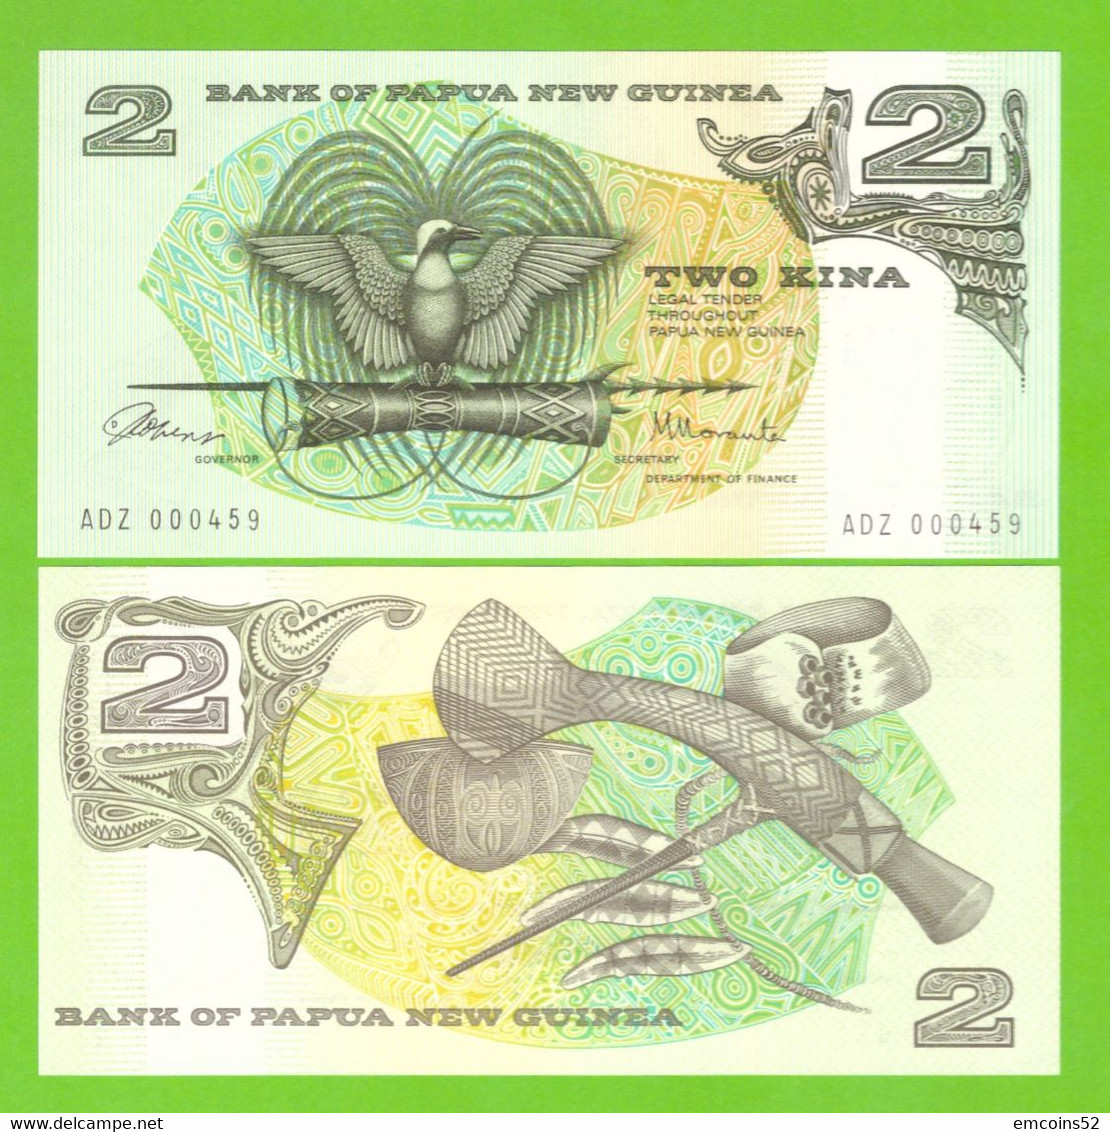 PAPUA NEW GUINEA 2 DOLLARS 1981/1987  P-5a  UNC - Papouasie-Nouvelle-Guinée